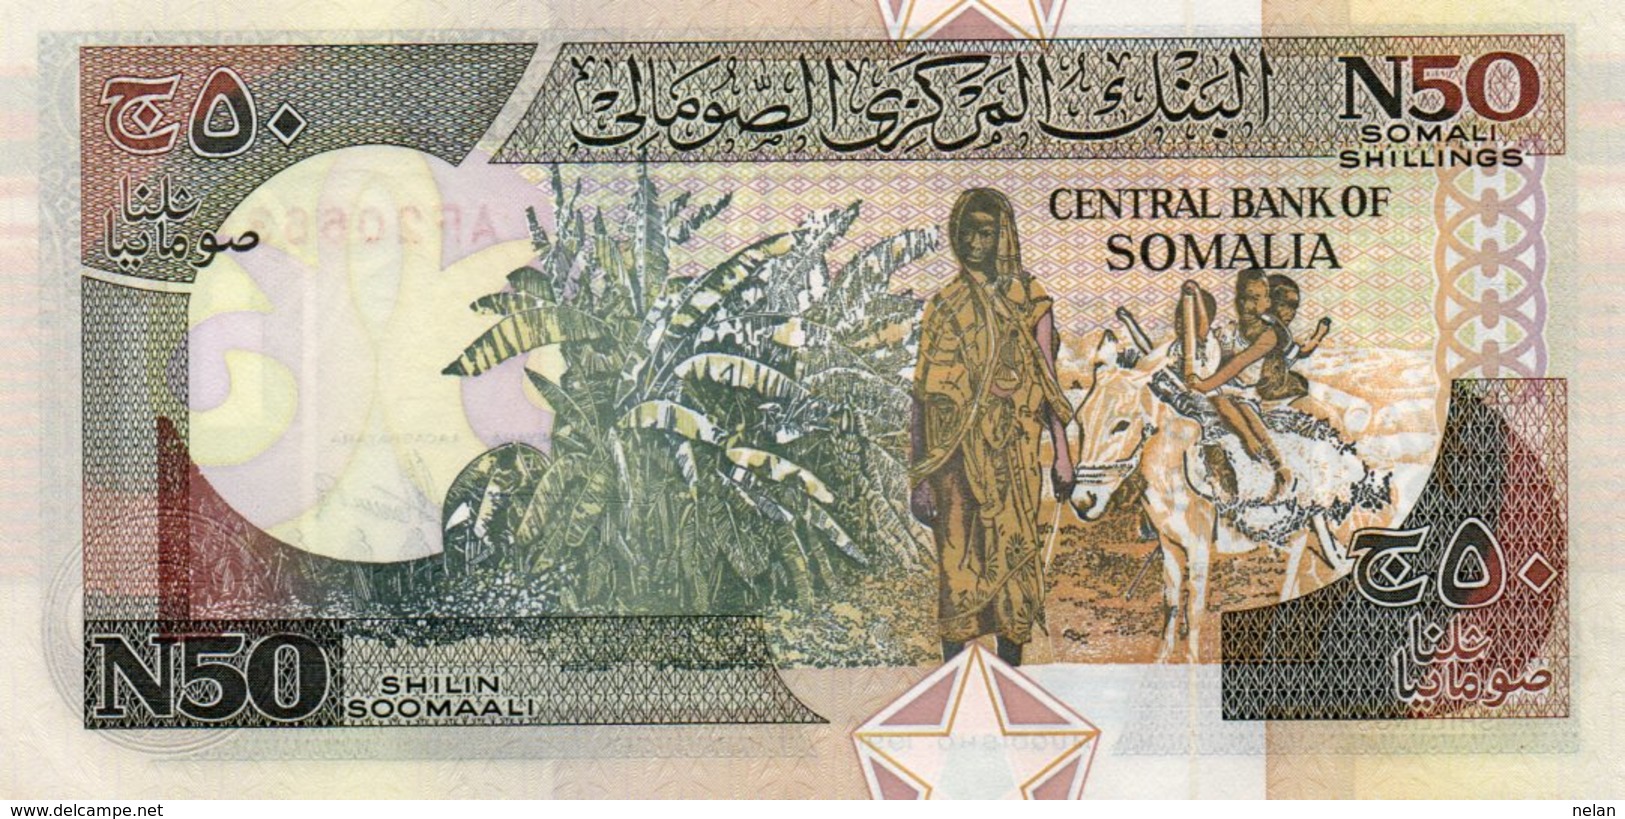 SOMALIA 50 SHILIN SOOMAALI 1991 P-R2a.1  UNC SERIE AF 2066318 - Somalia